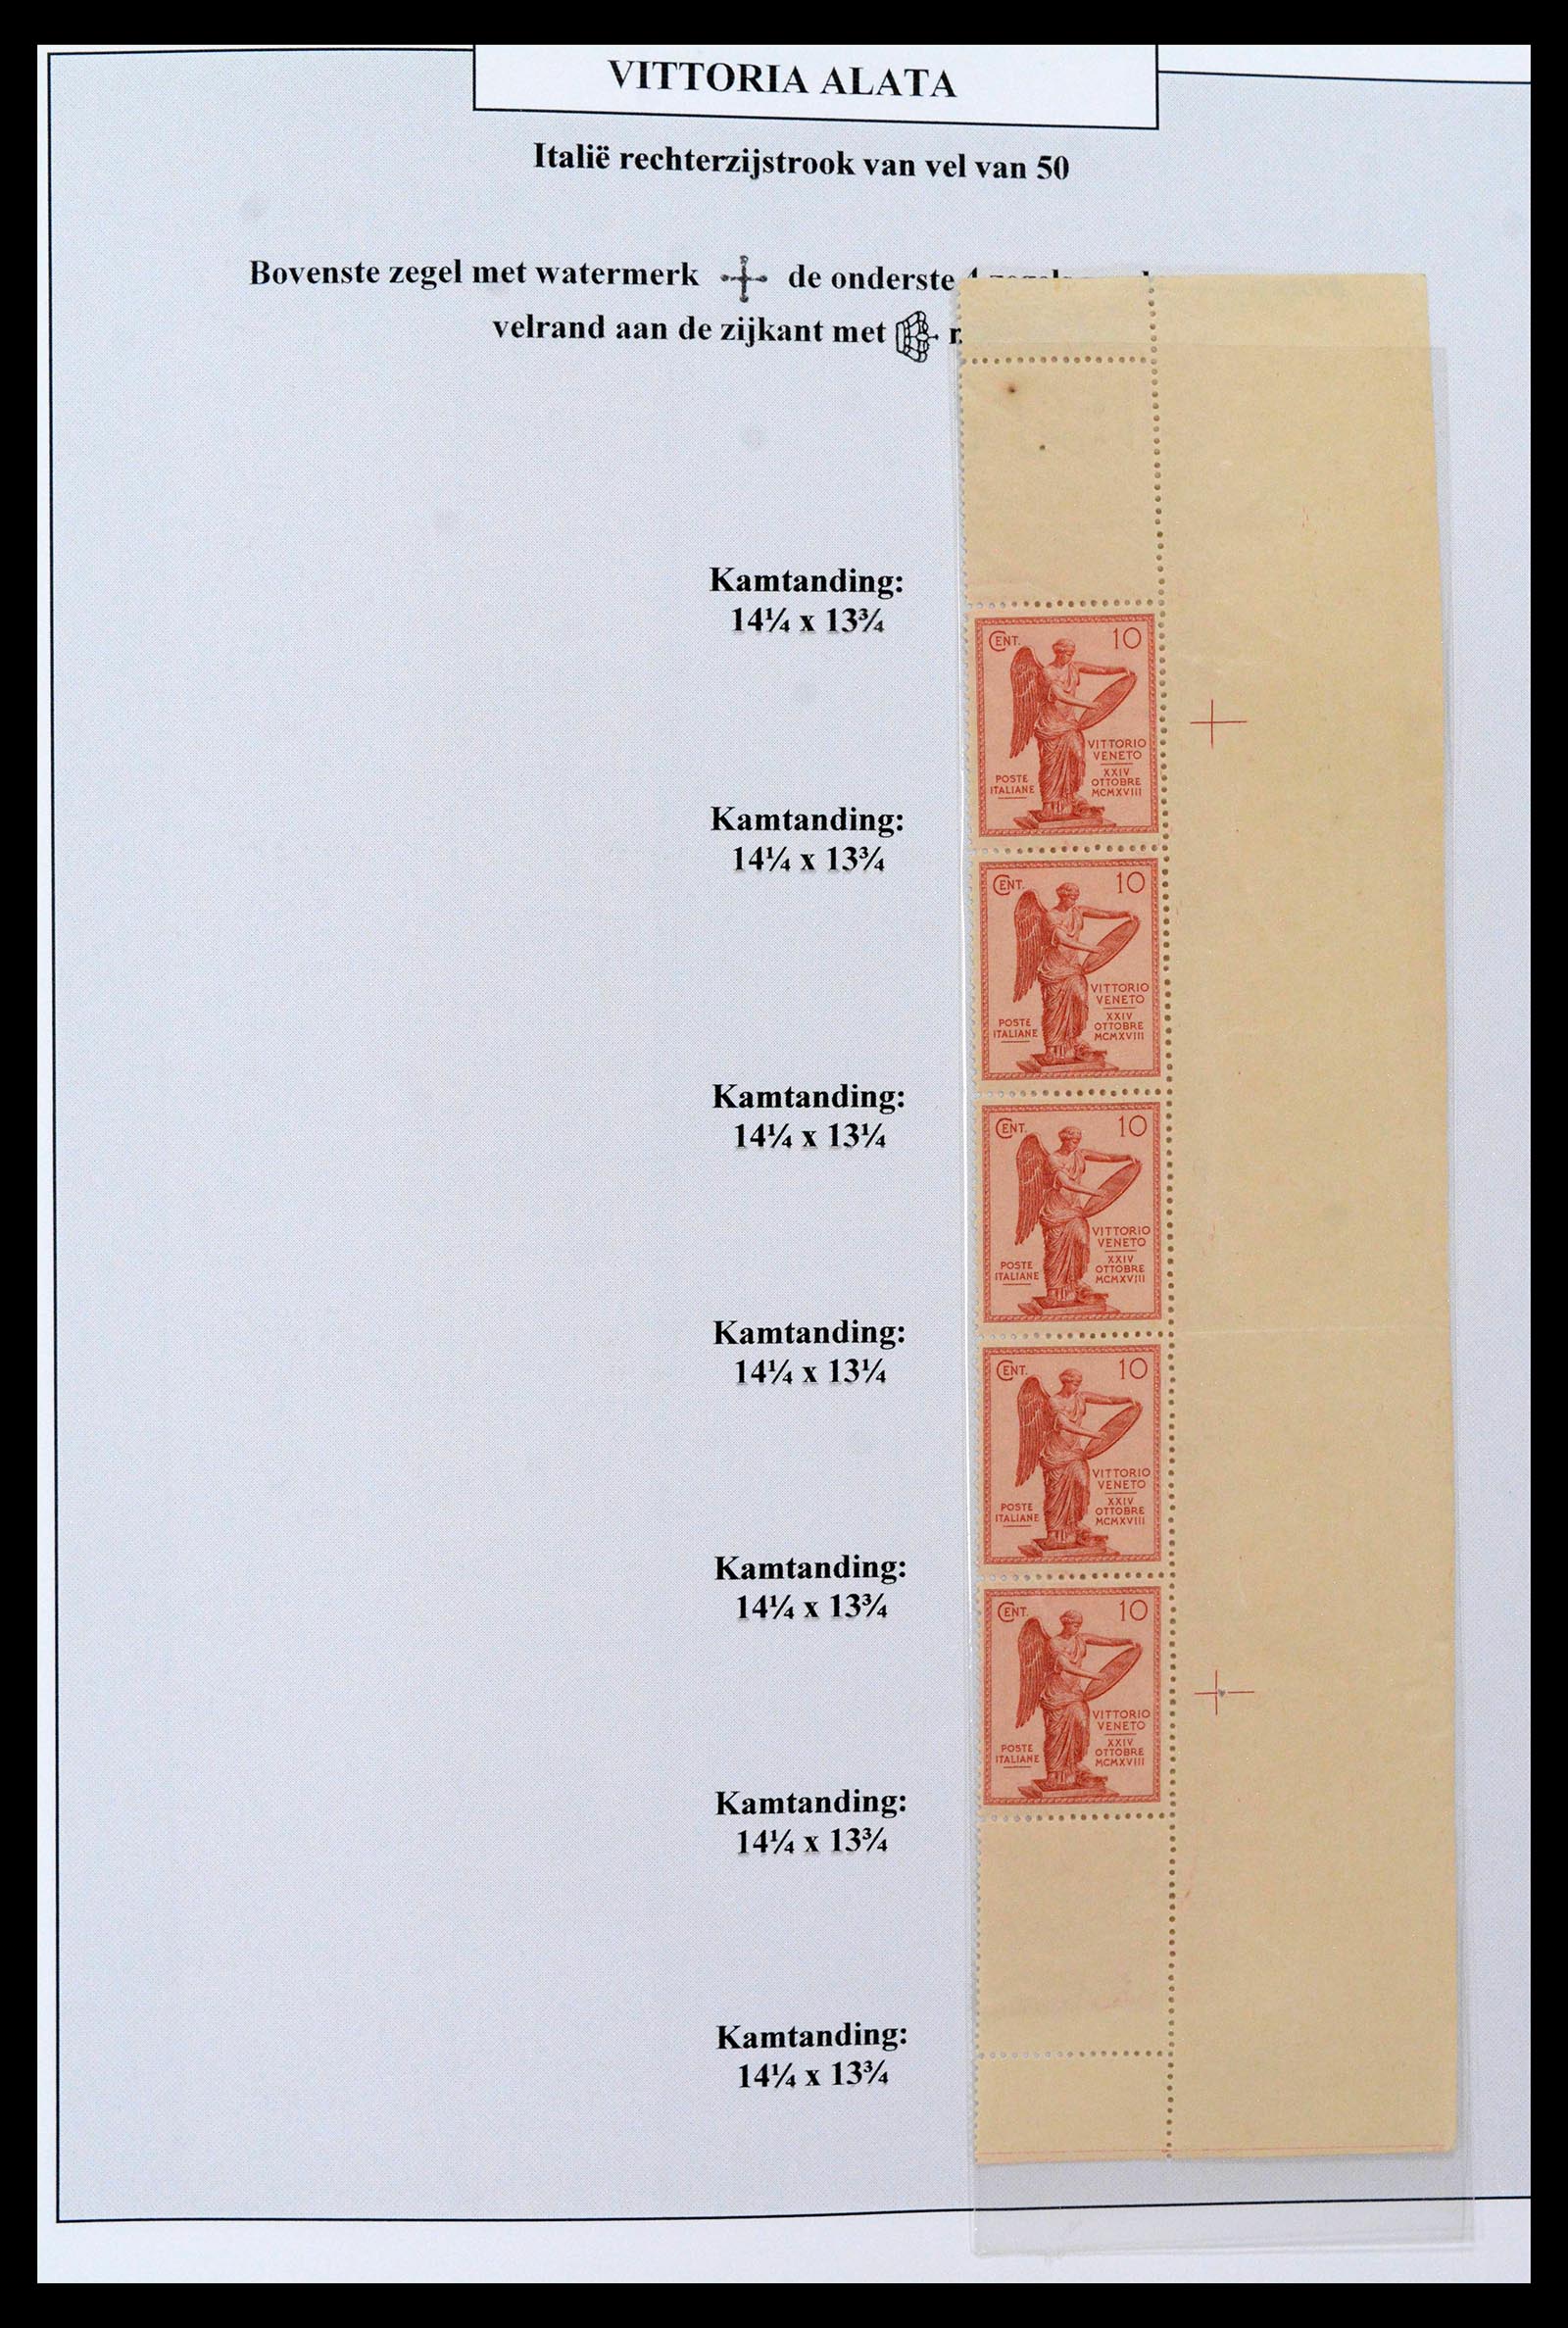 38515 0020 - Postzegelverzameling 38515 Italië en koloniën speciaalverzameling Vit